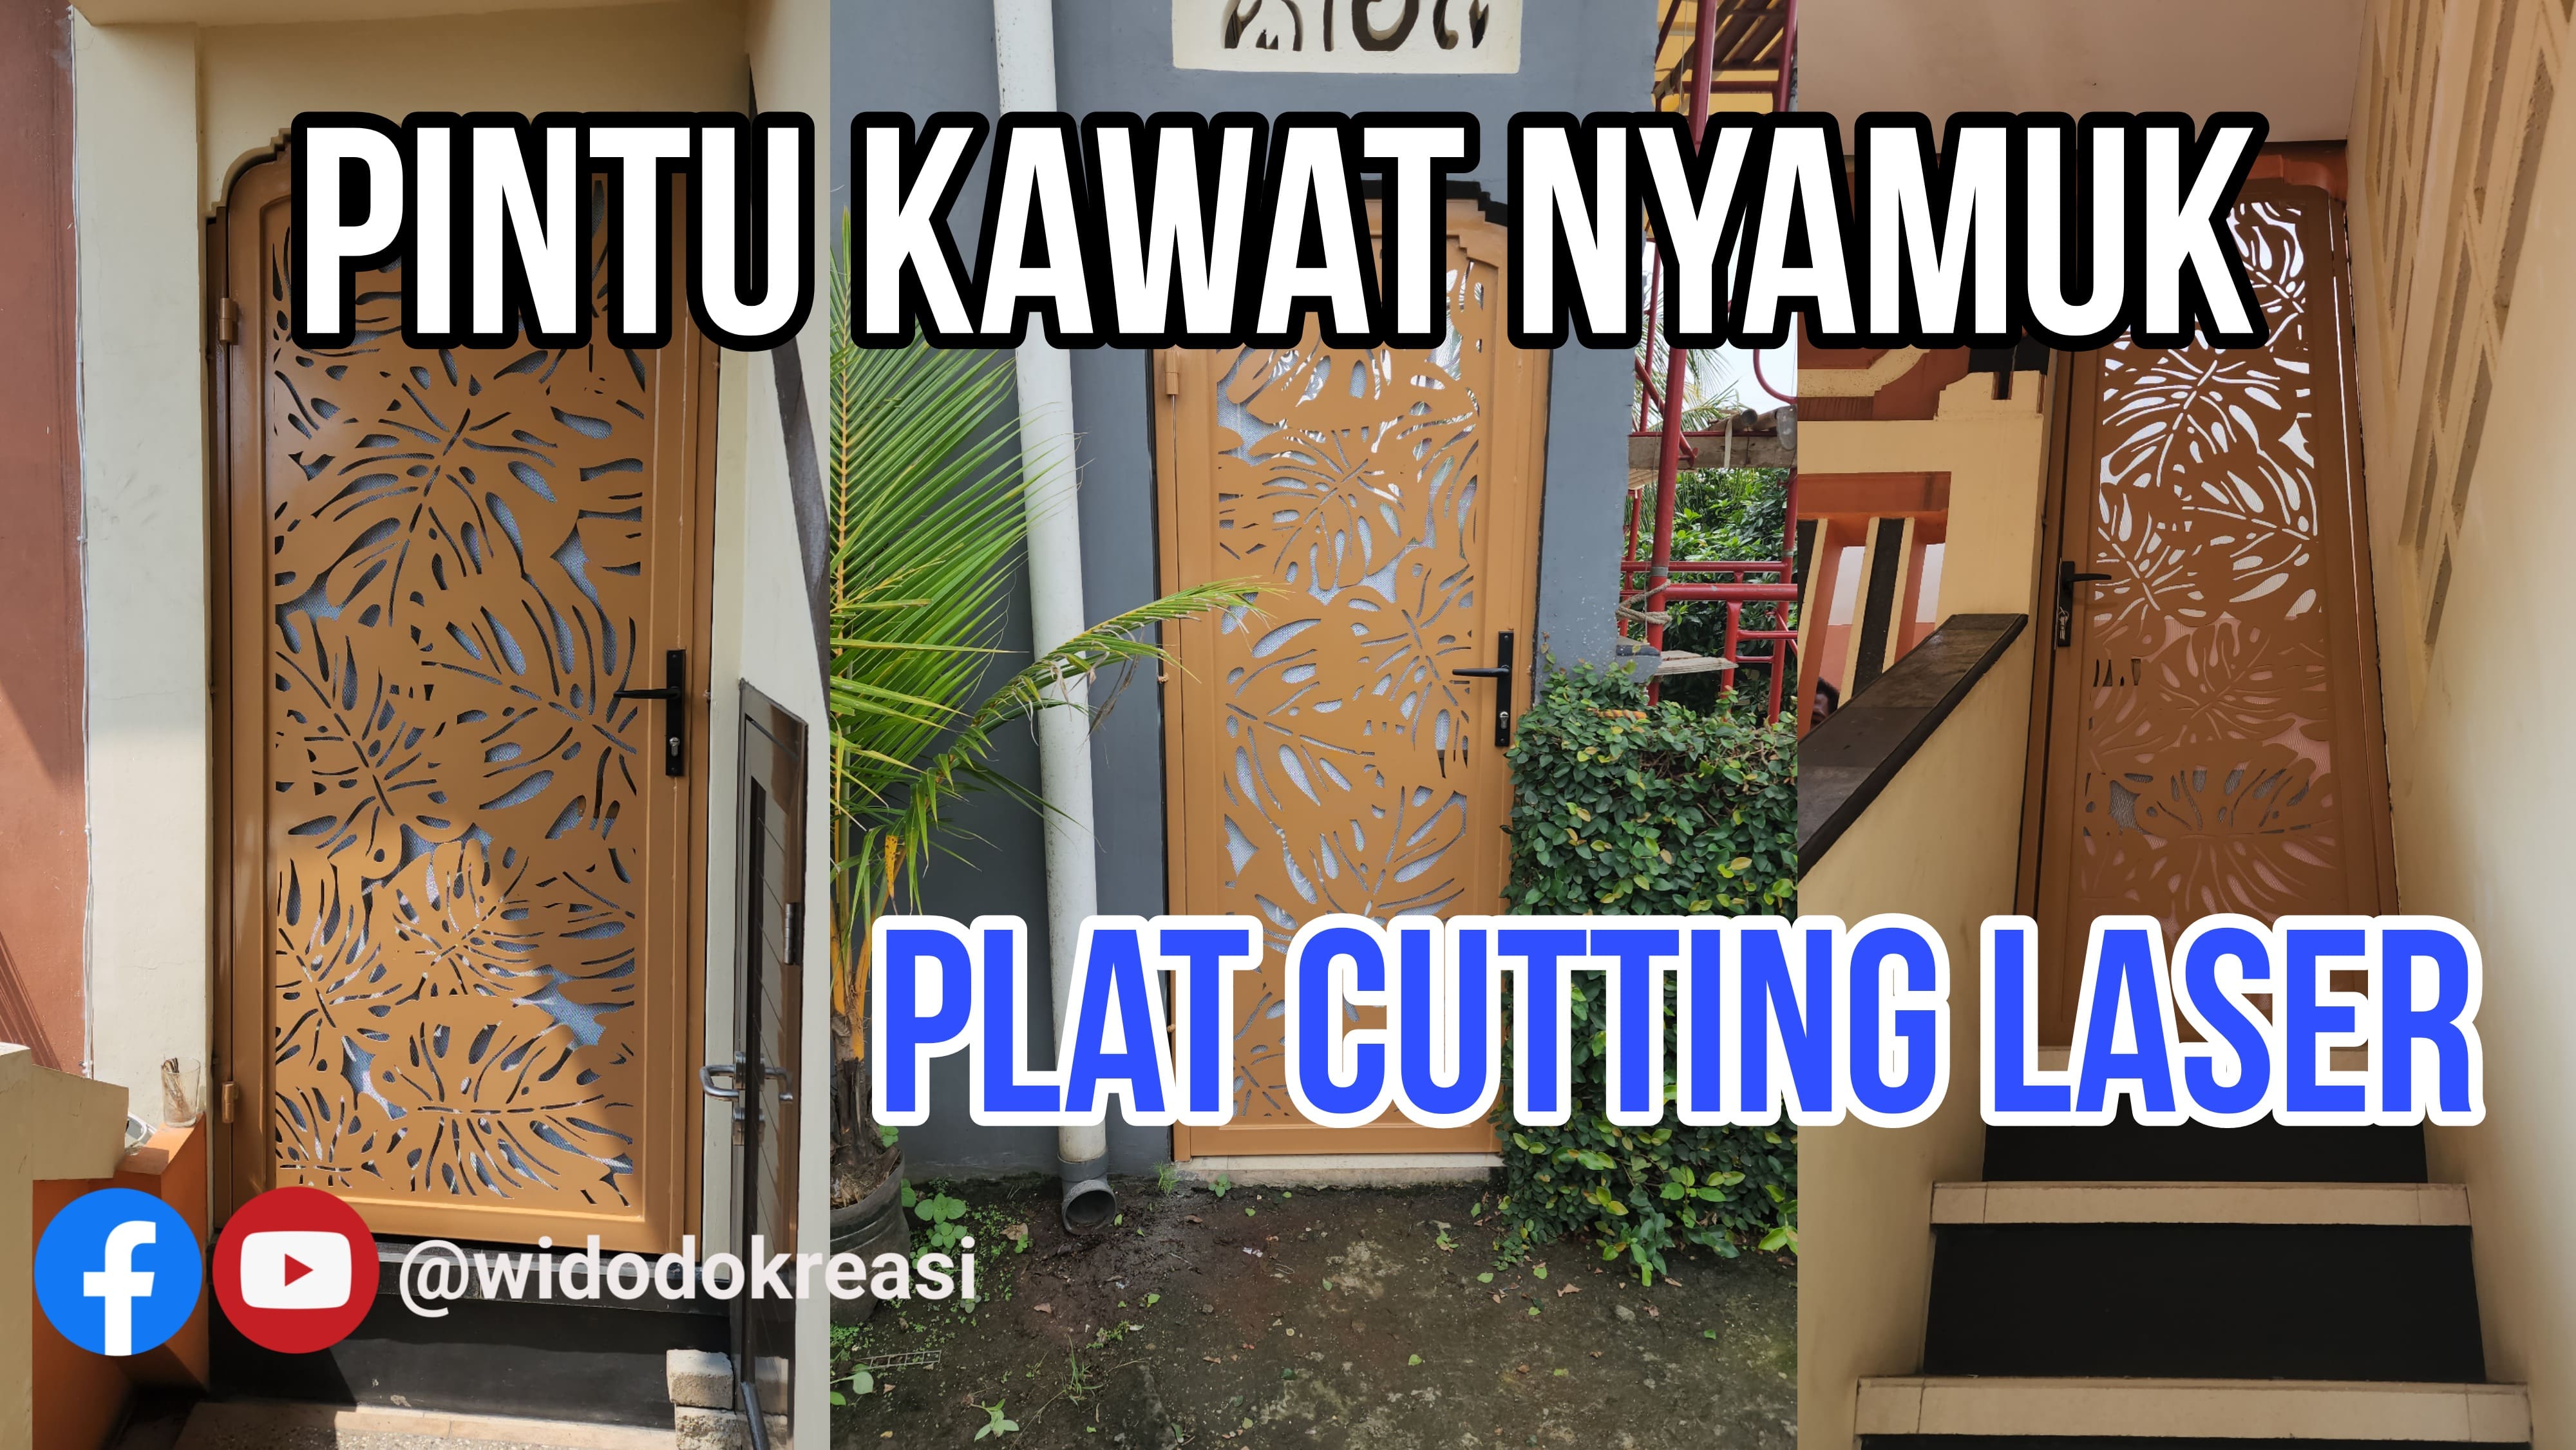 Pintu Kawat Nyamuk Besi Plat Cutting Laser terpasang di Rumah Bu Susi di Citeurep Bogor